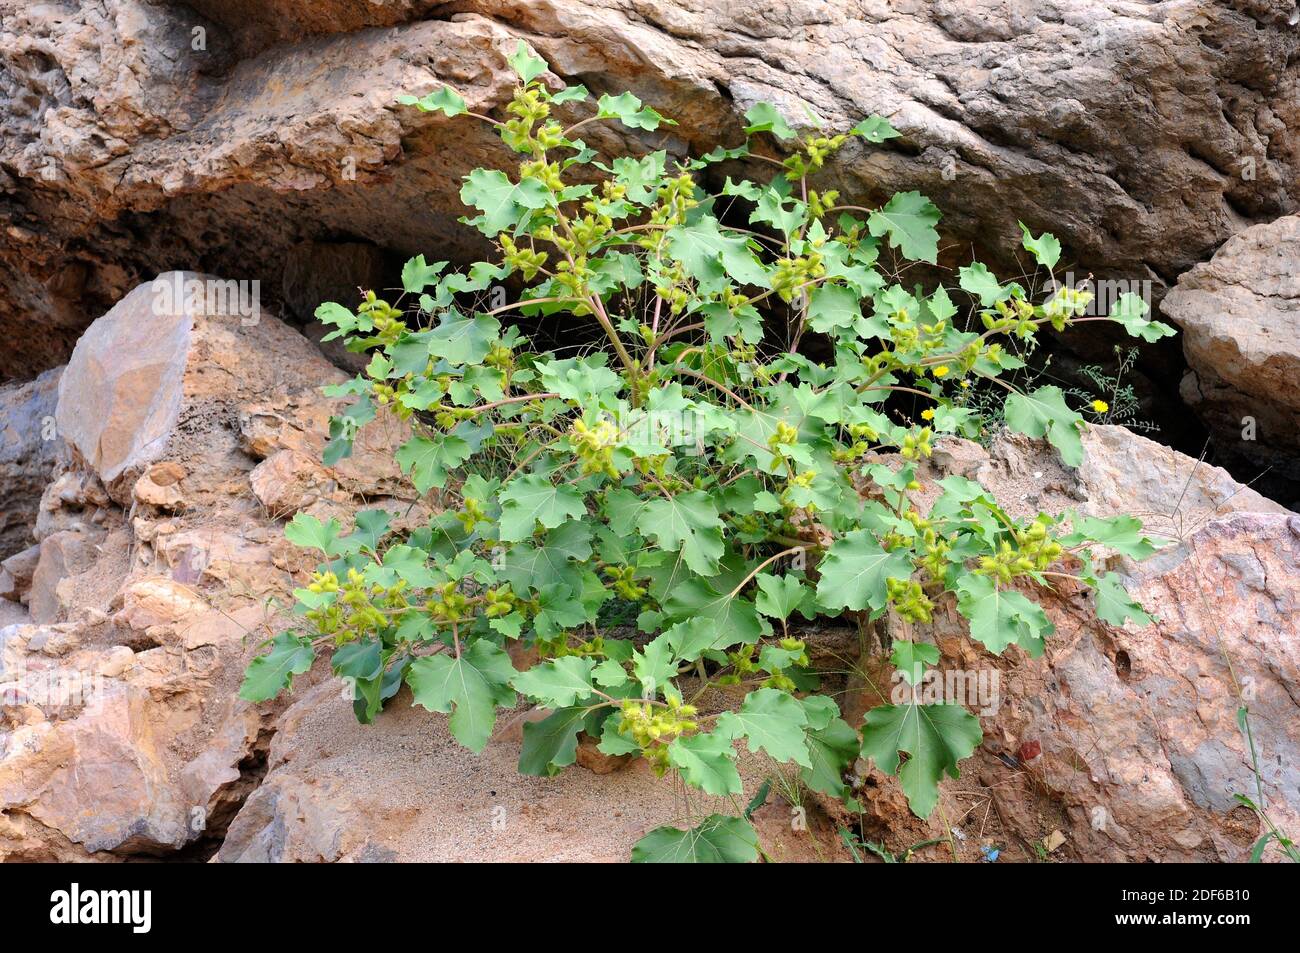 Clotbur o gallebur común (Xanthium strumarium) es una planta anual probablemente nativa de Norteamérica, pero ampliamente naturalizada en otros lugares. Es Foto de stock